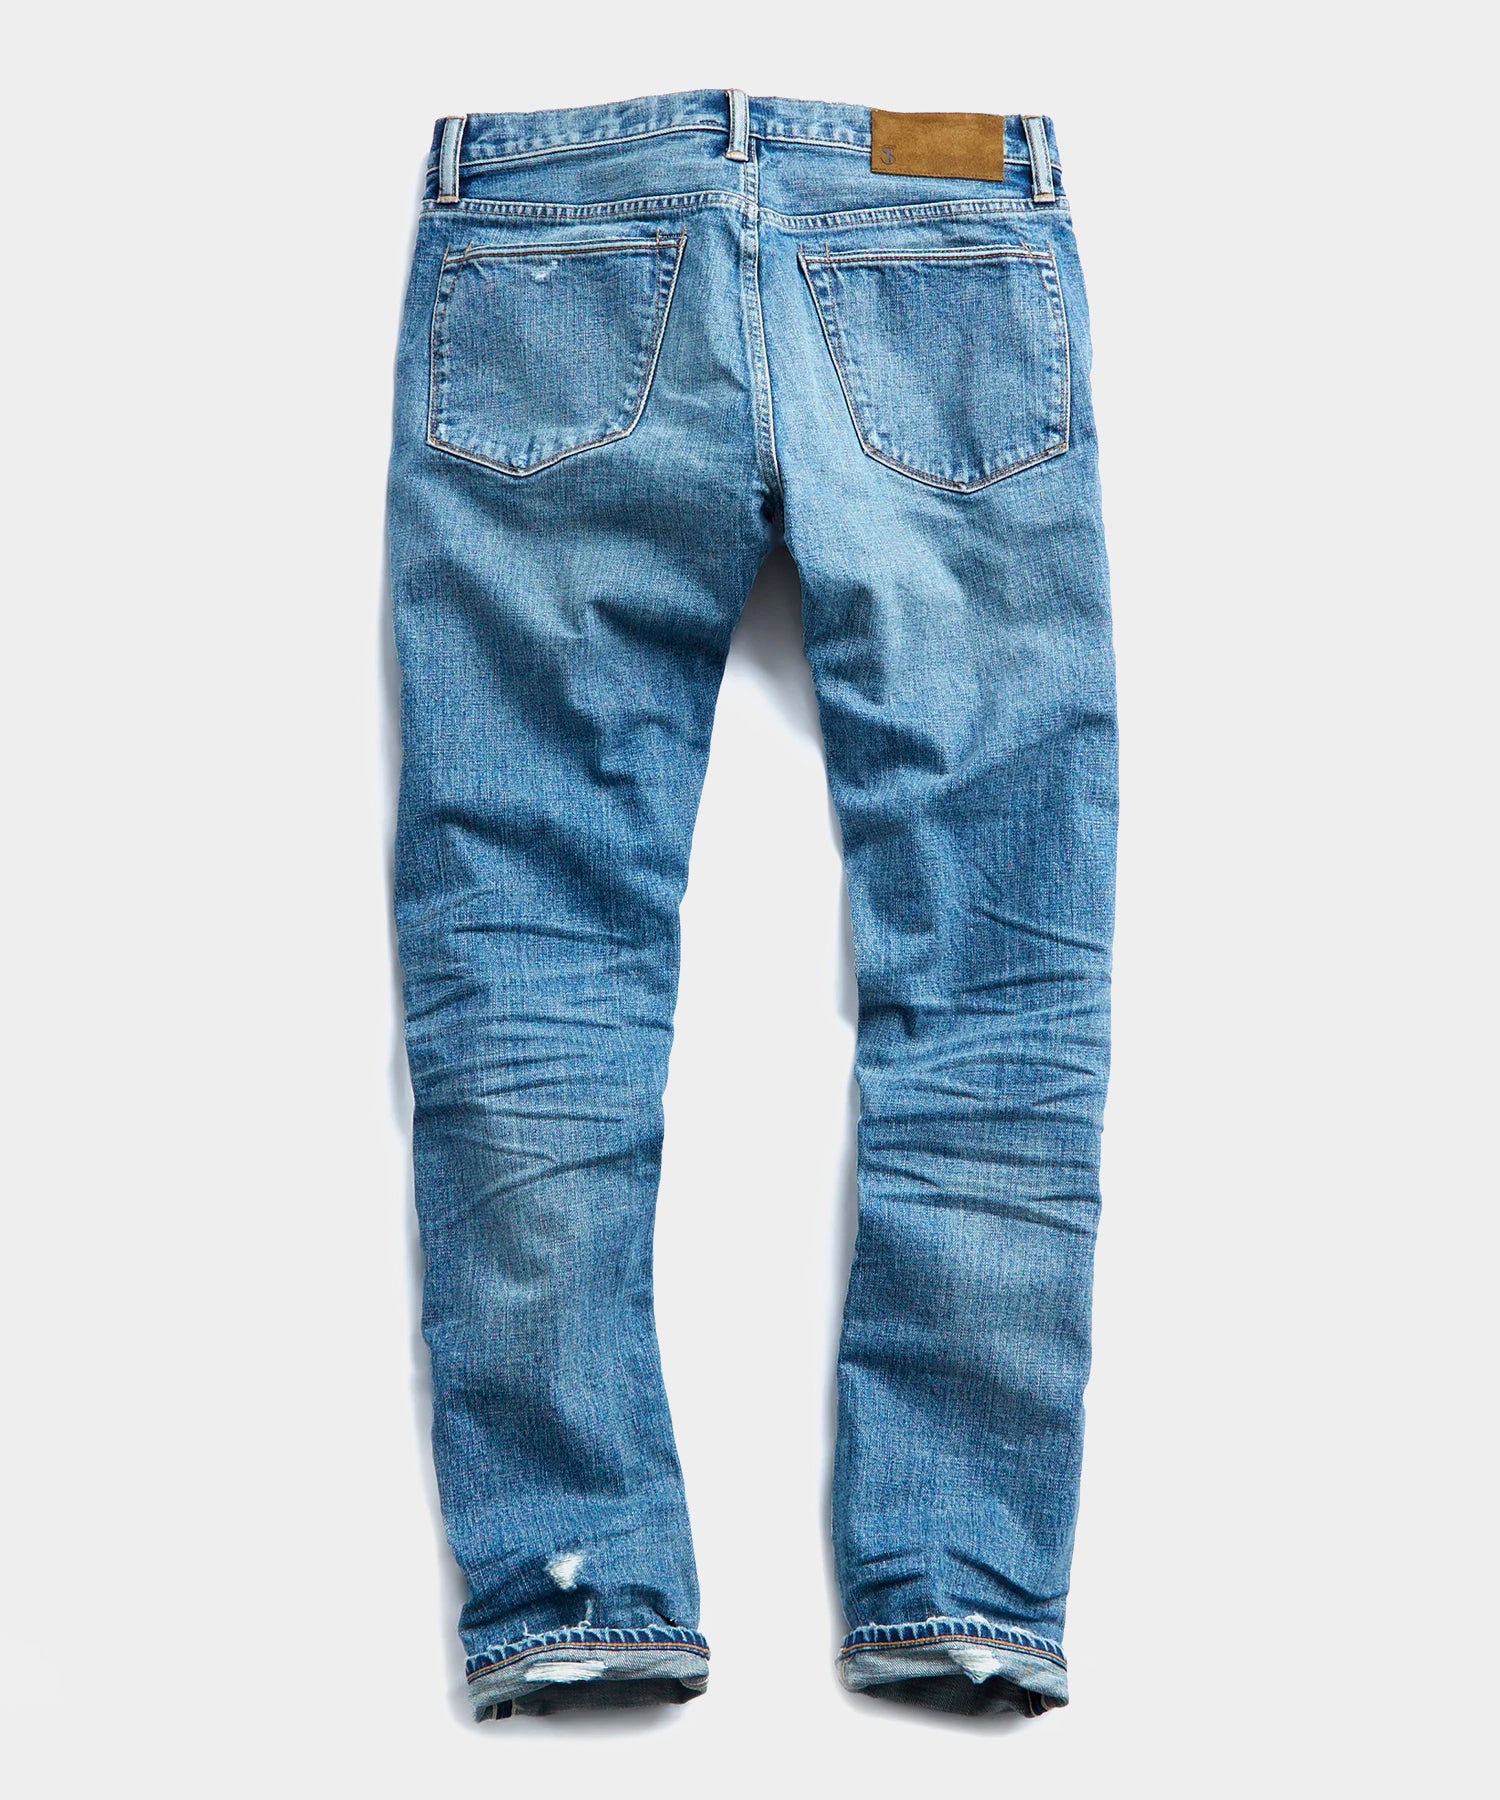 japanese selvedge denim jeans